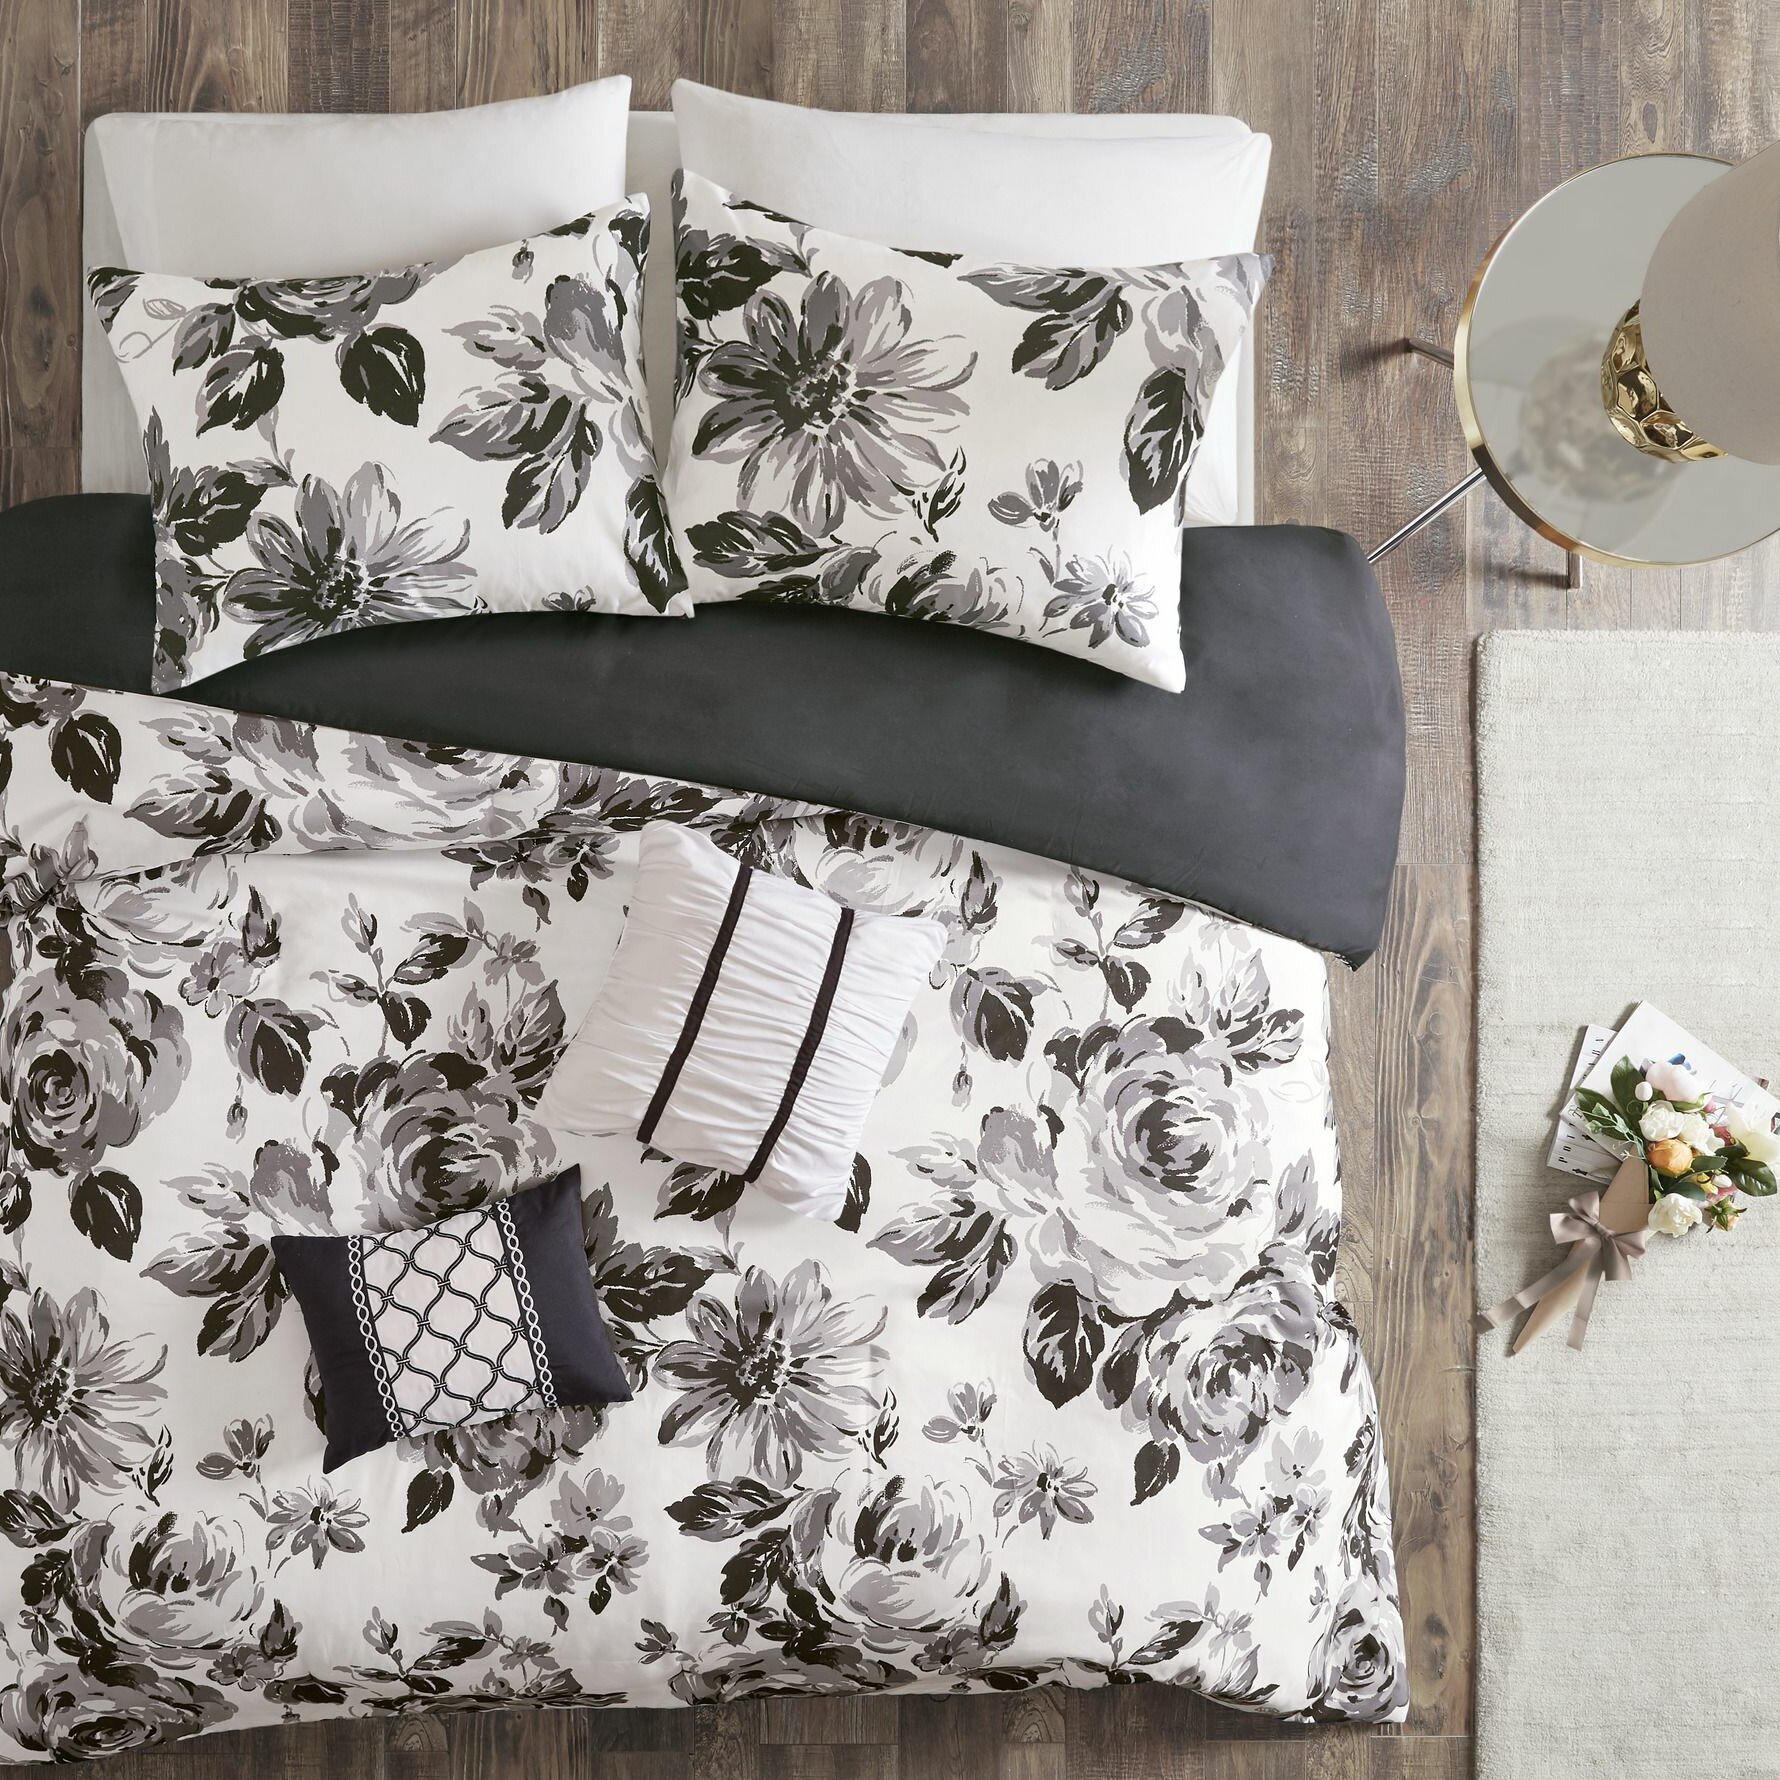 https://assets.wfcdn.com/im/85708169/compr-r85/6332/63323028/darwyn-black-white-floral-comforter-set.jpg